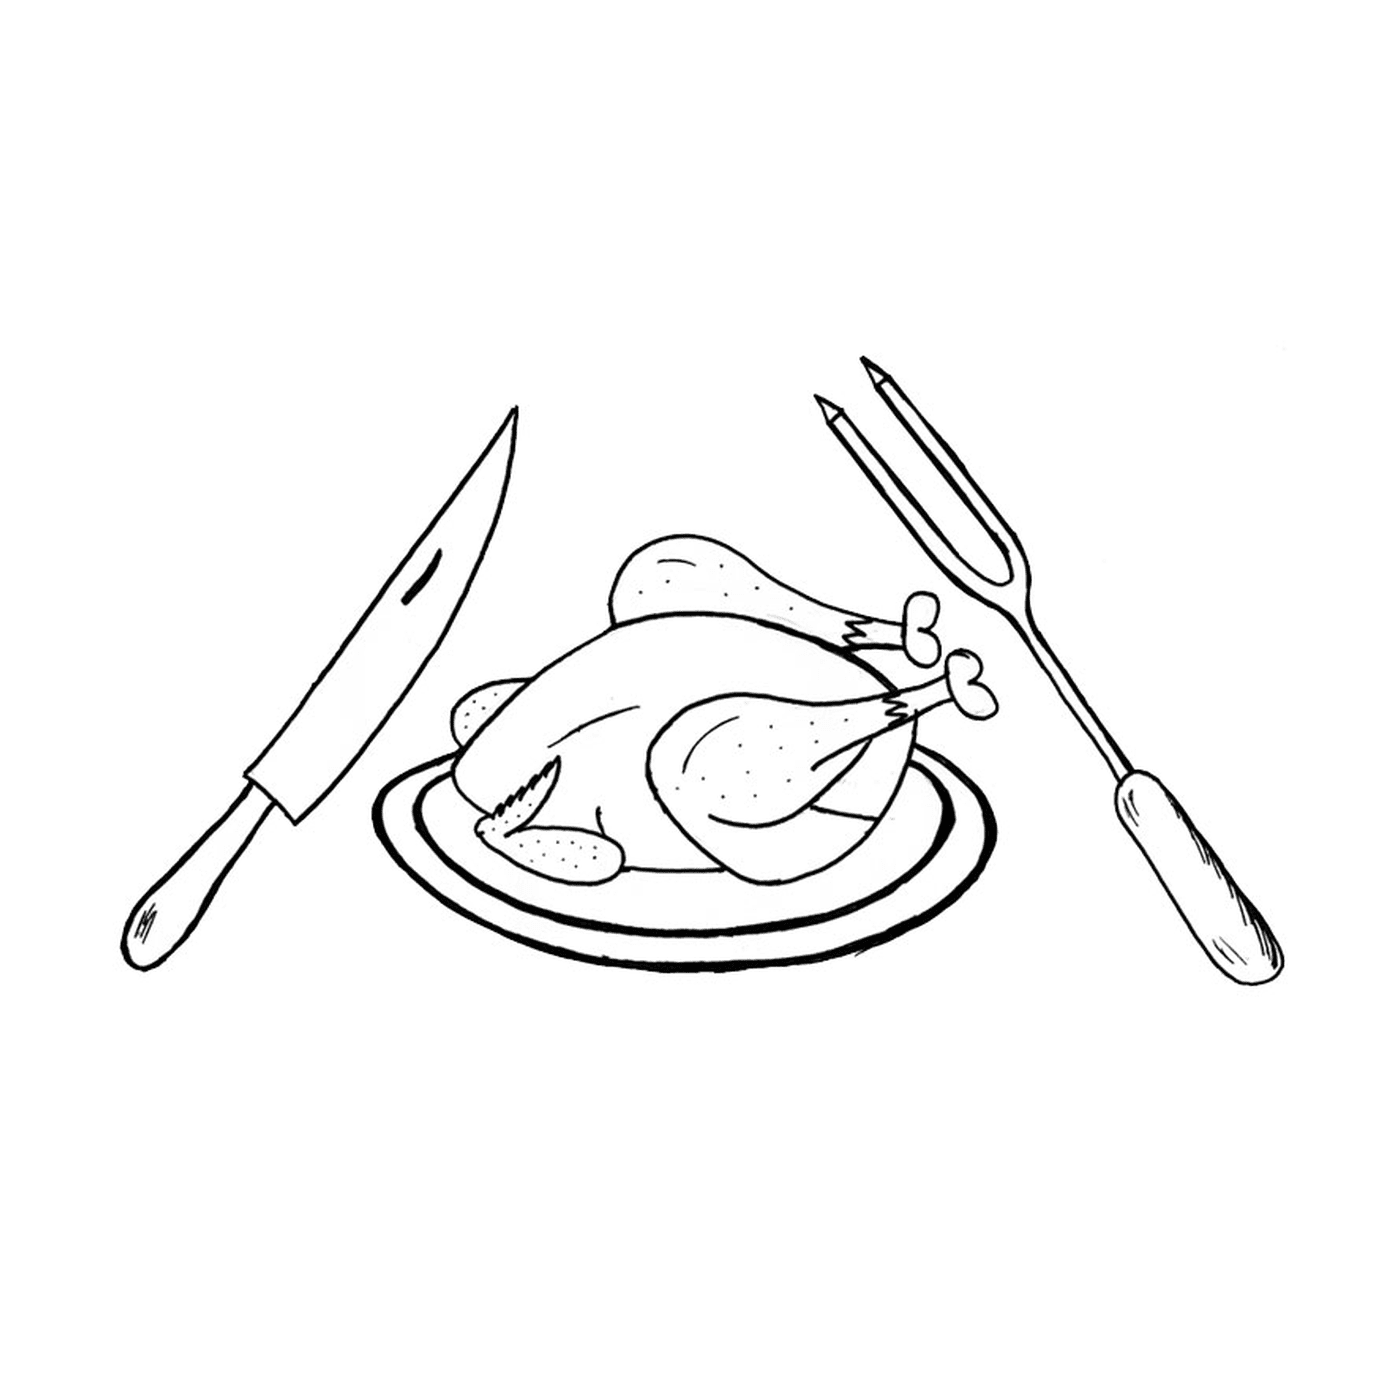  餐盘上的鸡肉,刀子,叉子和叉子 